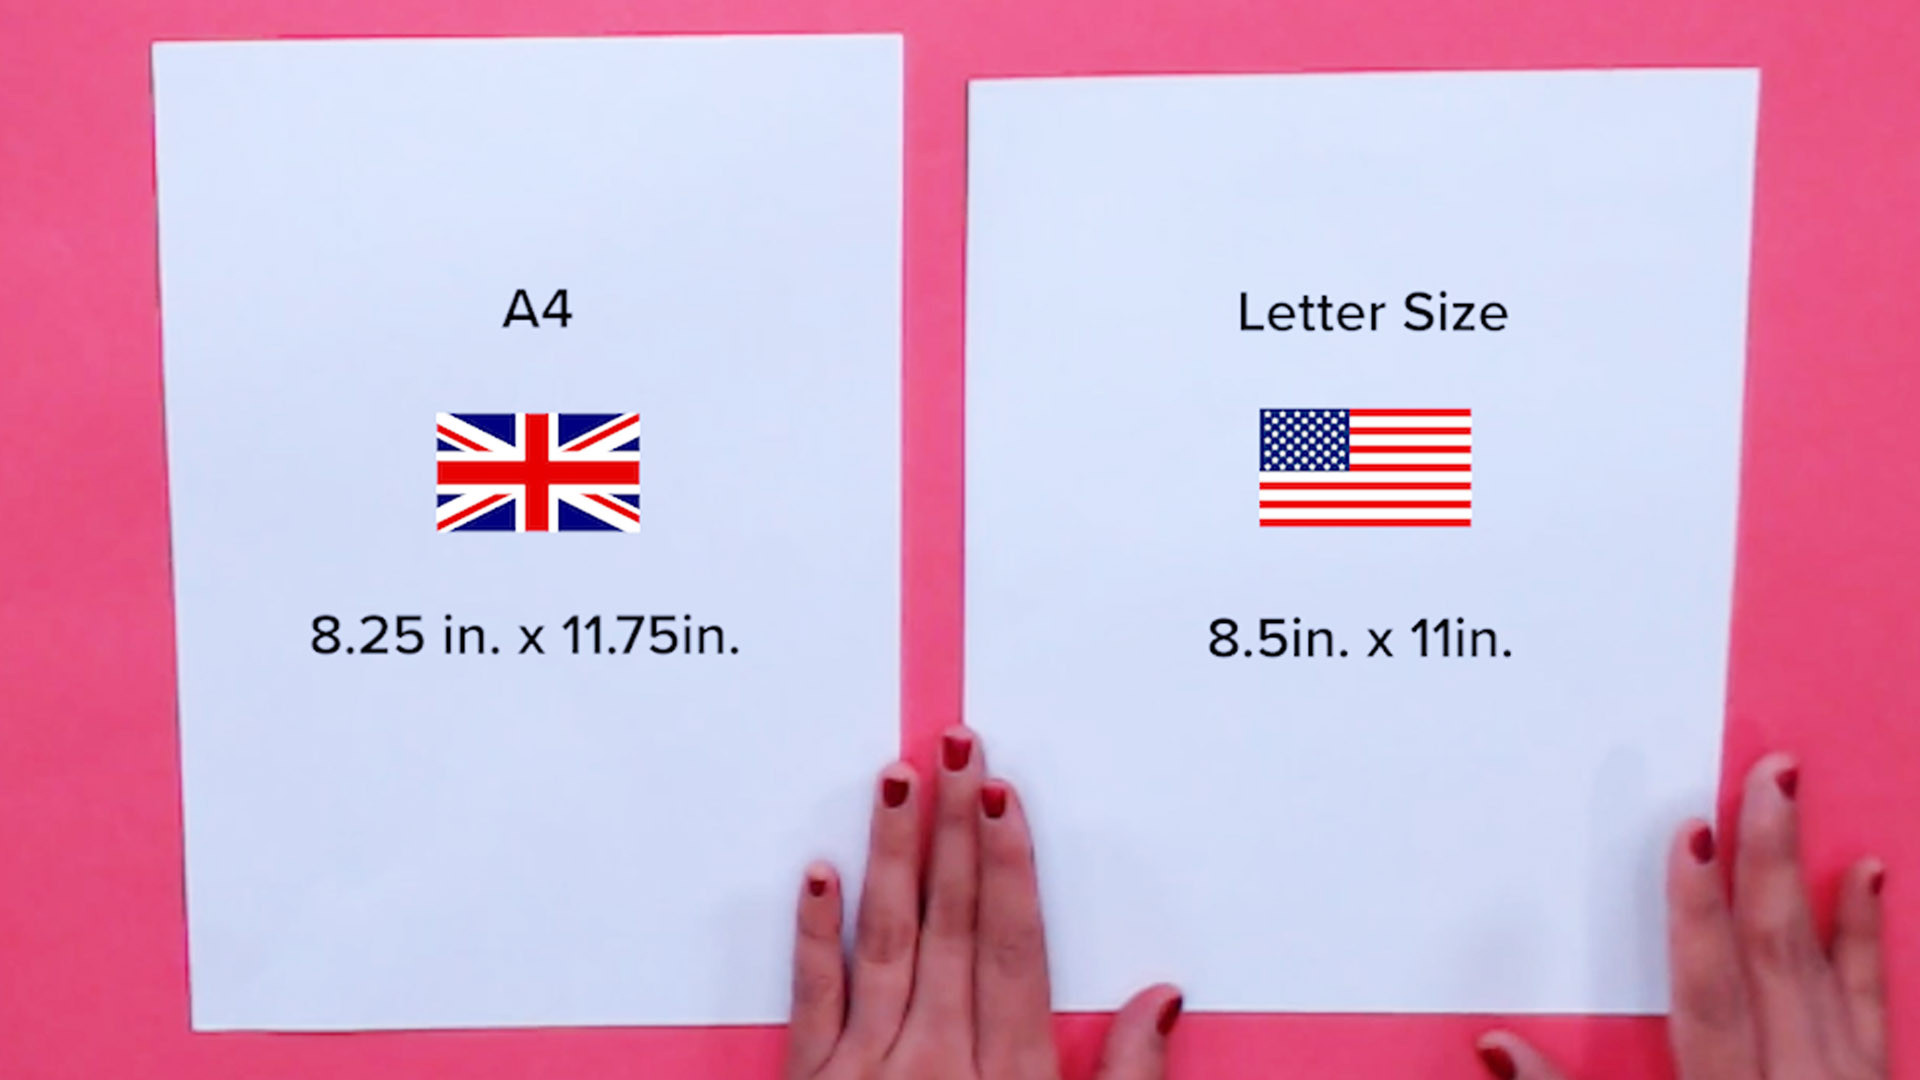 uk-vs-us-card-sizes-explained